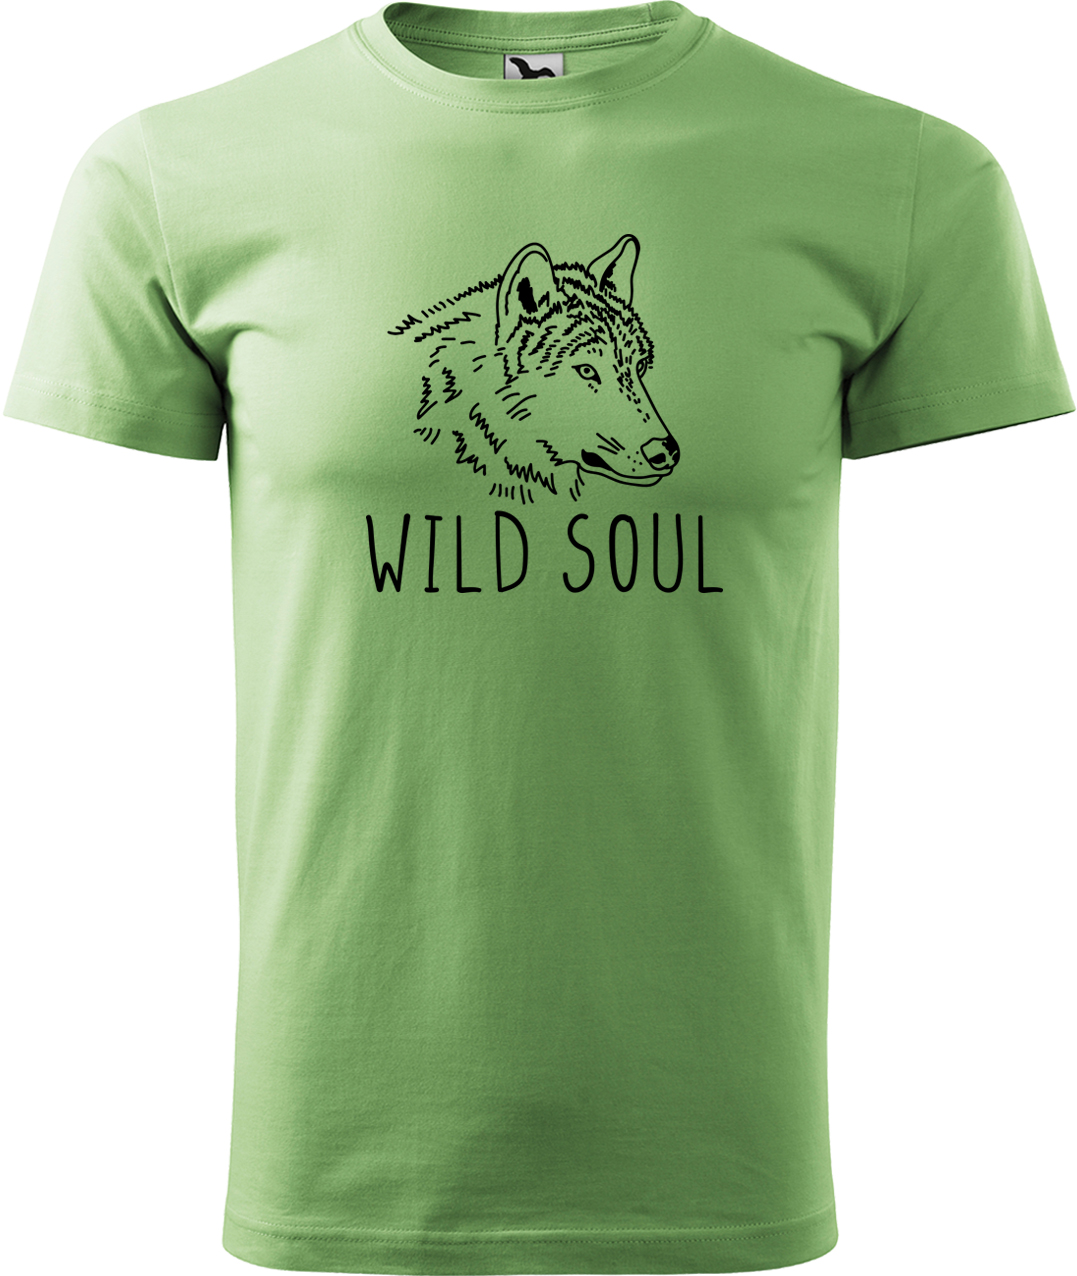 Pánské tričko s vlkem - Wild soul Velikost: M, Barva: Trávově zelená (39), Střih: pánský